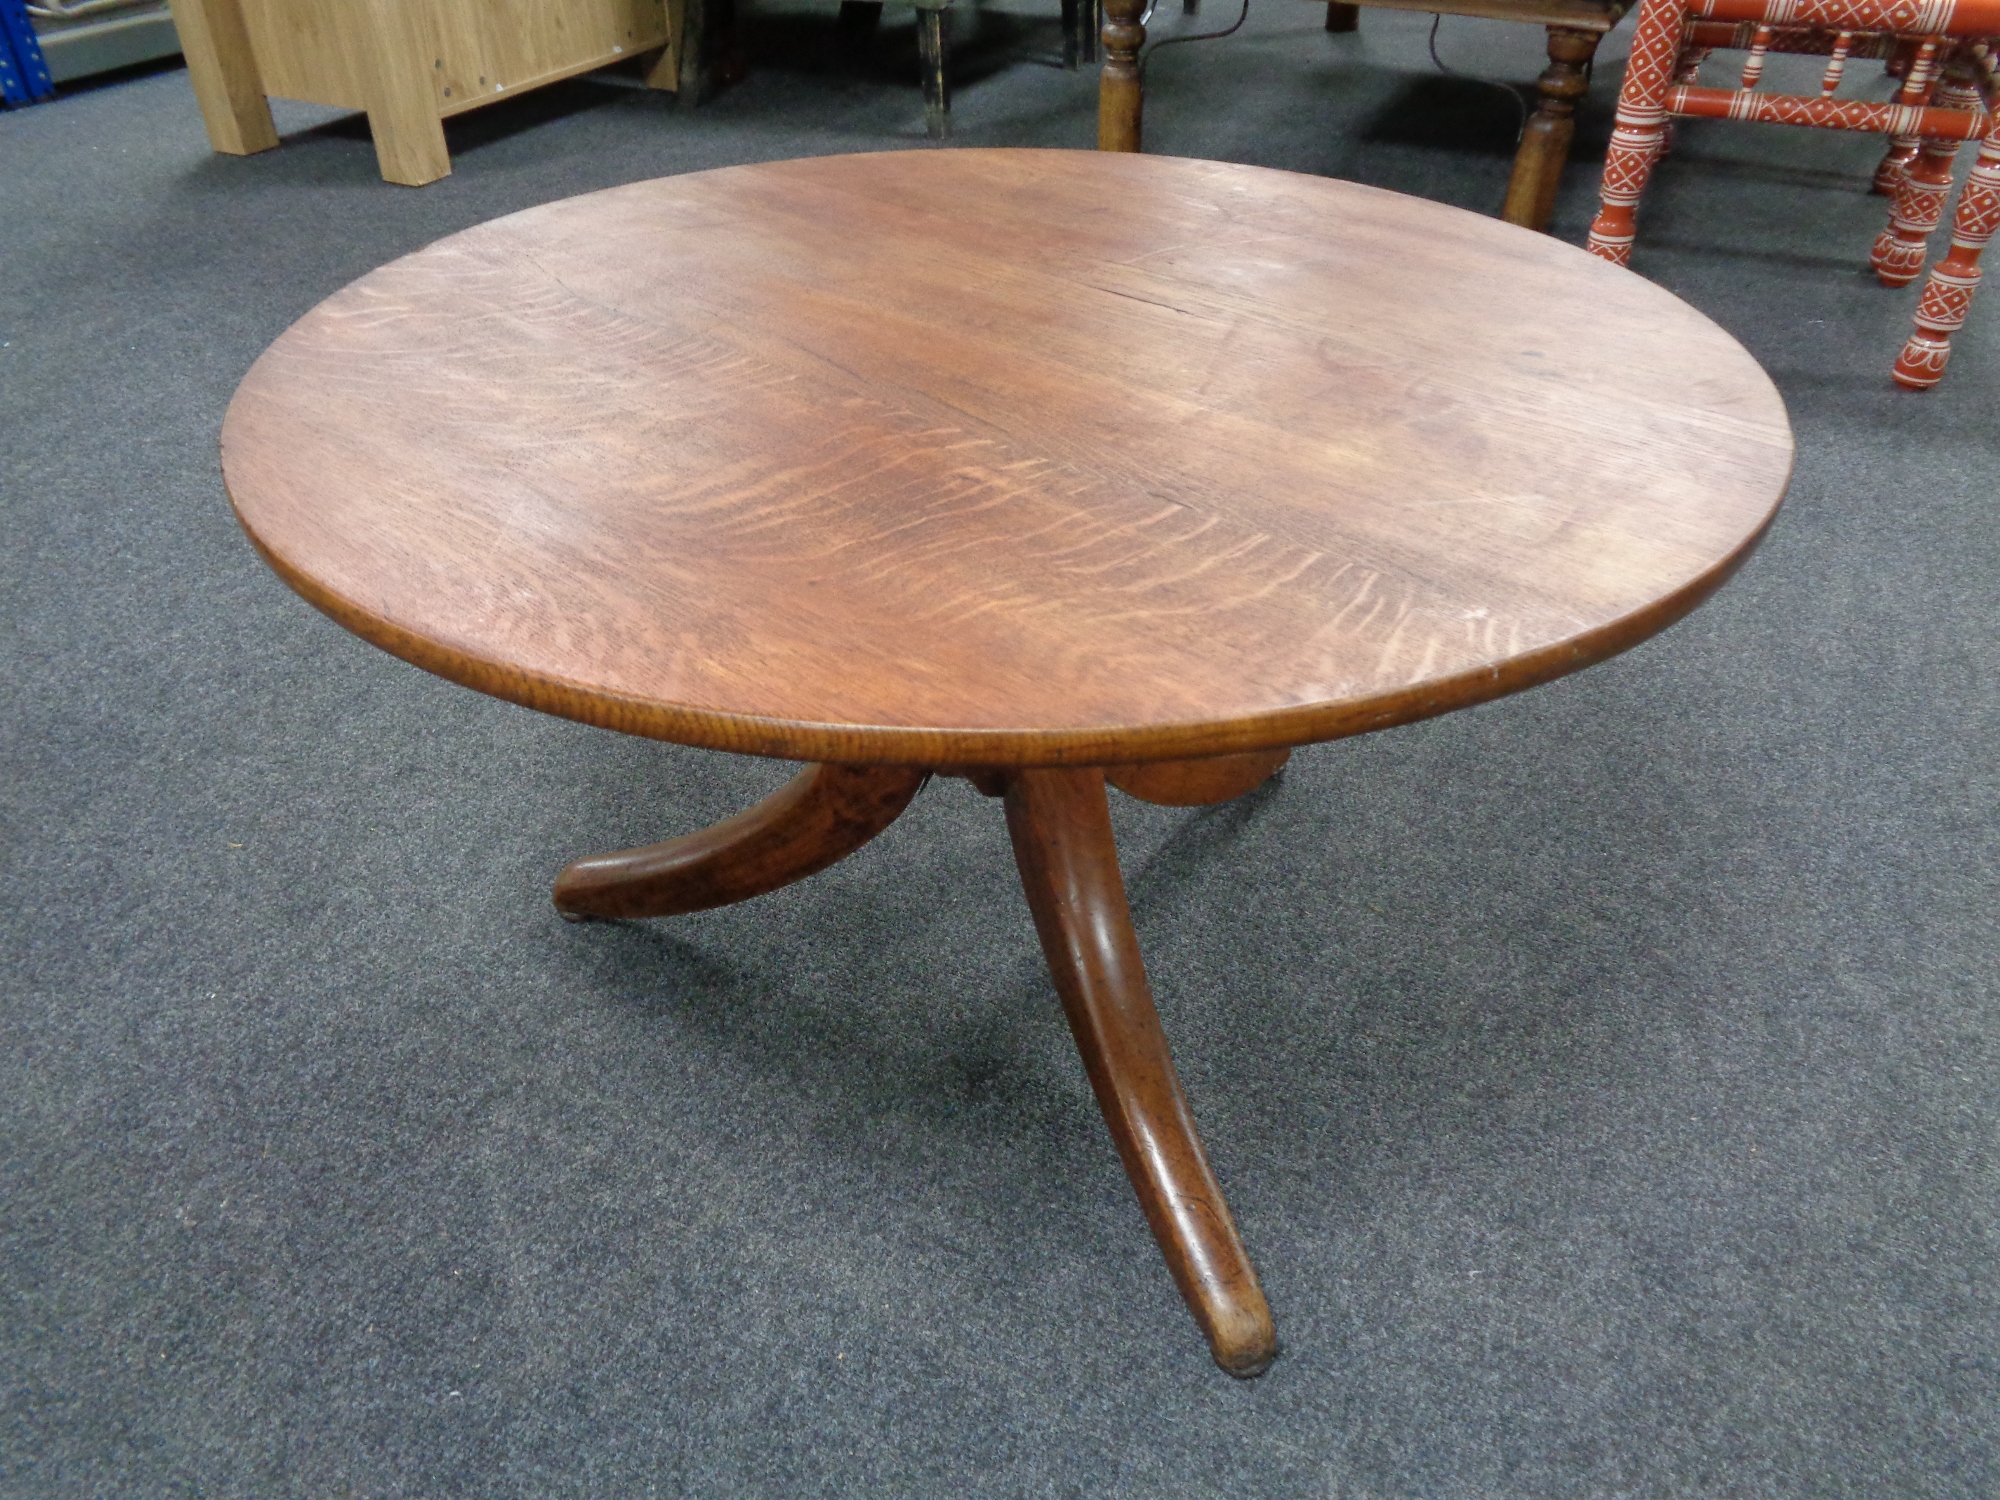 A circular pedestal coffee table